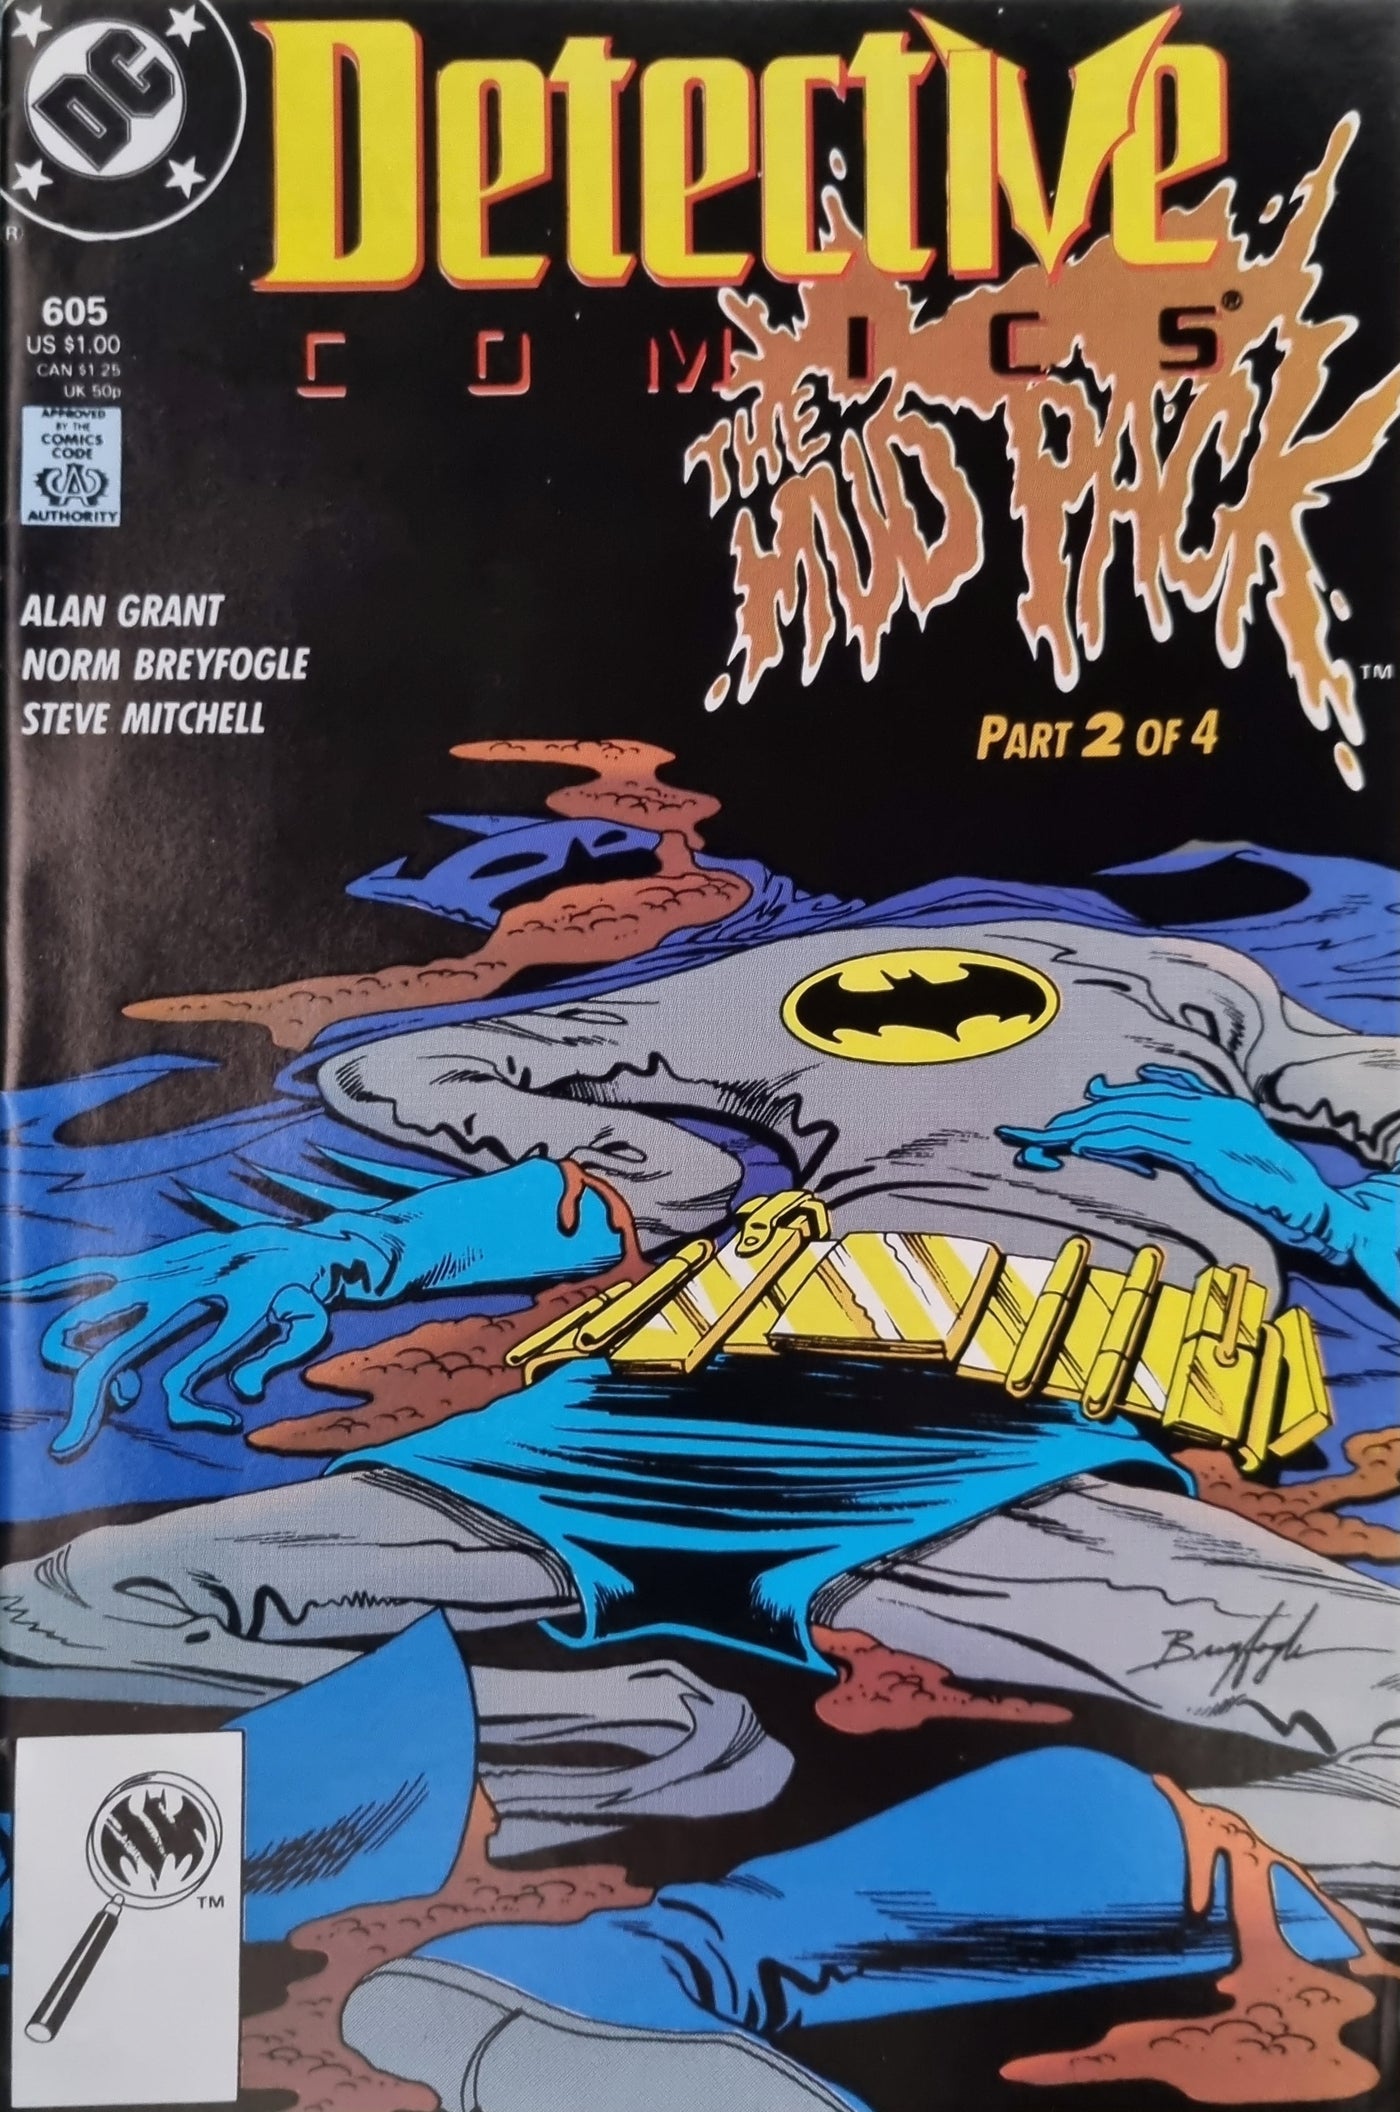 Detective Comics (Volume 1) #605